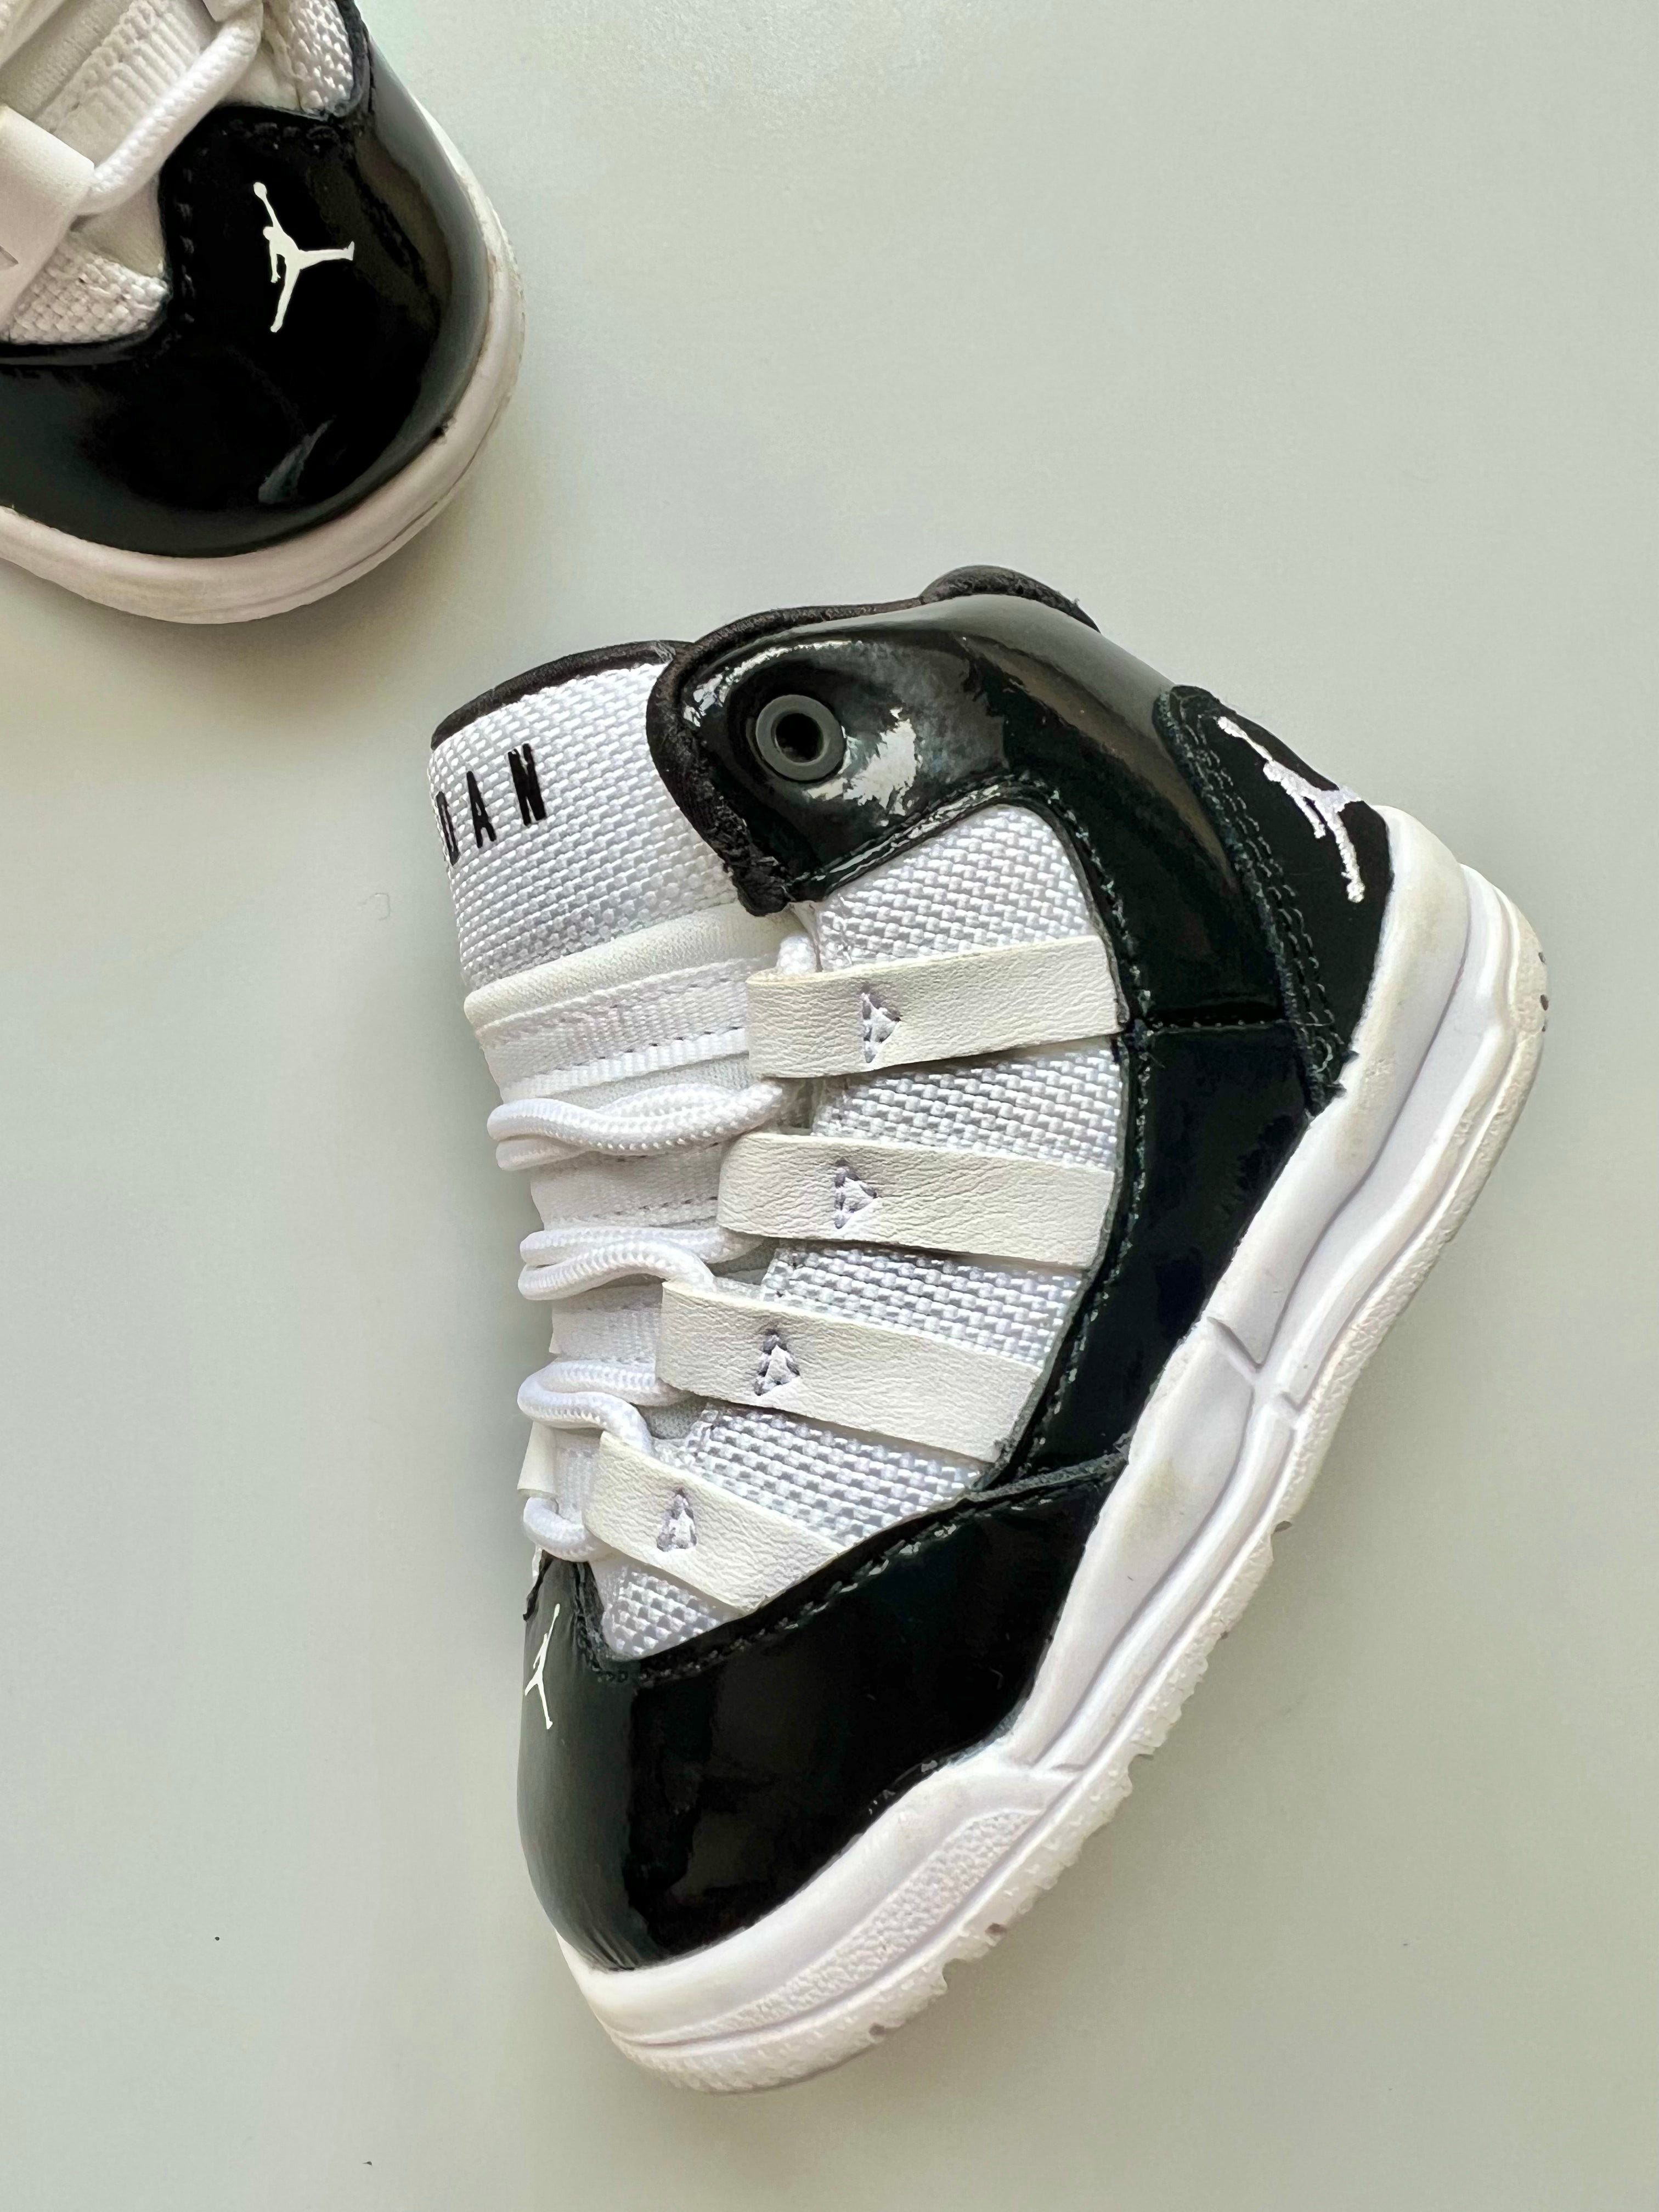 Nike Jordan Max Aura Sneakers Size 3.5